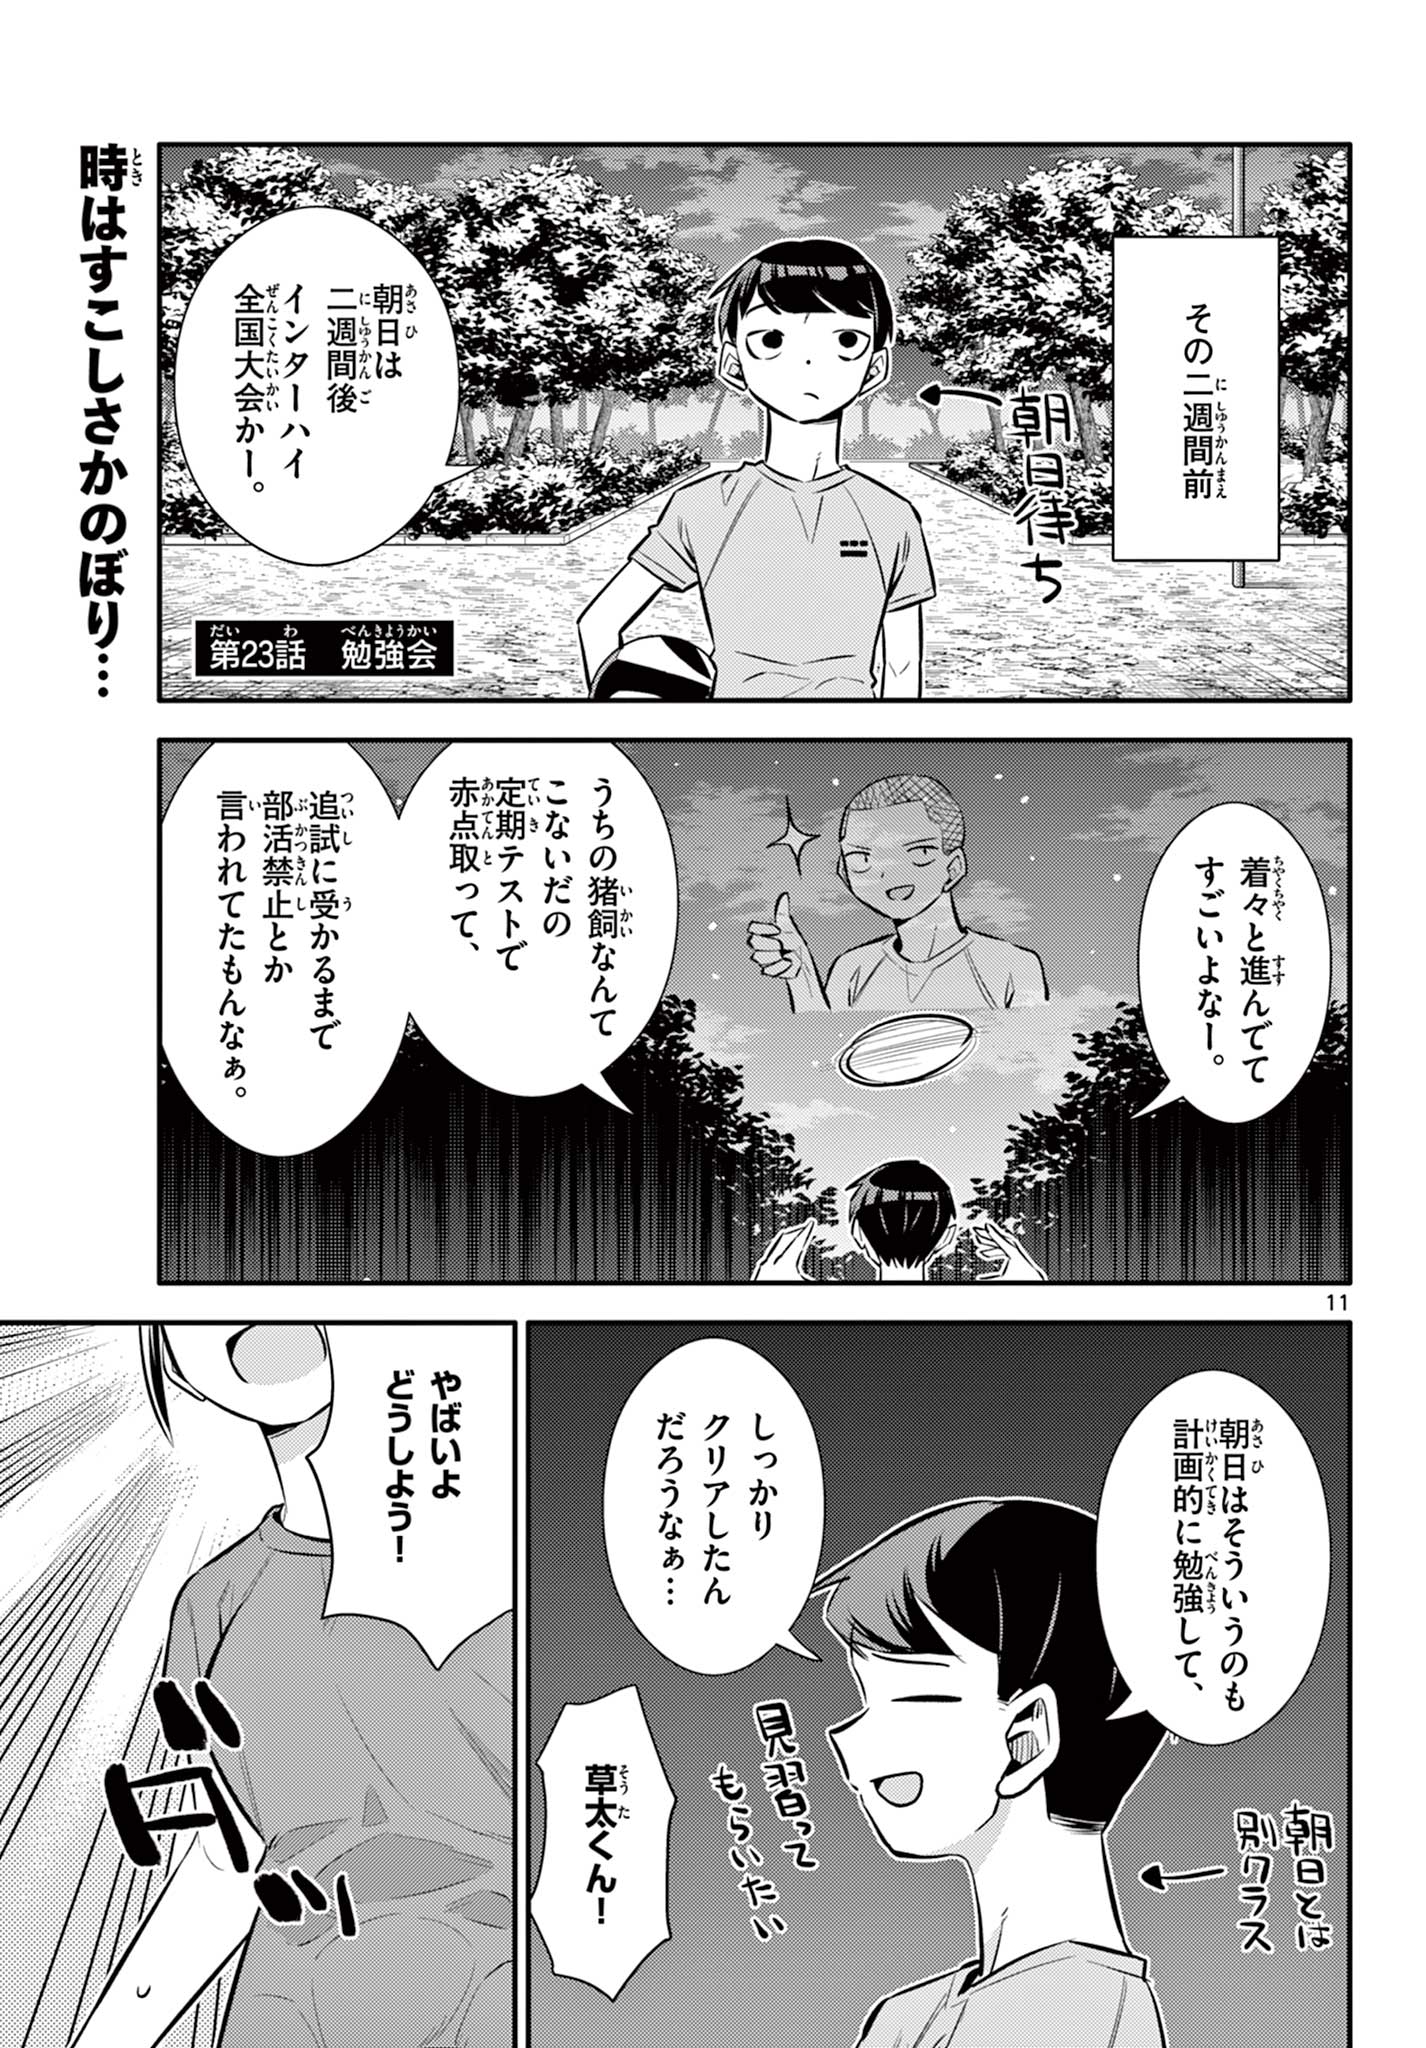 Chiisai Boku no Haru - Chapter 23 - Page 1